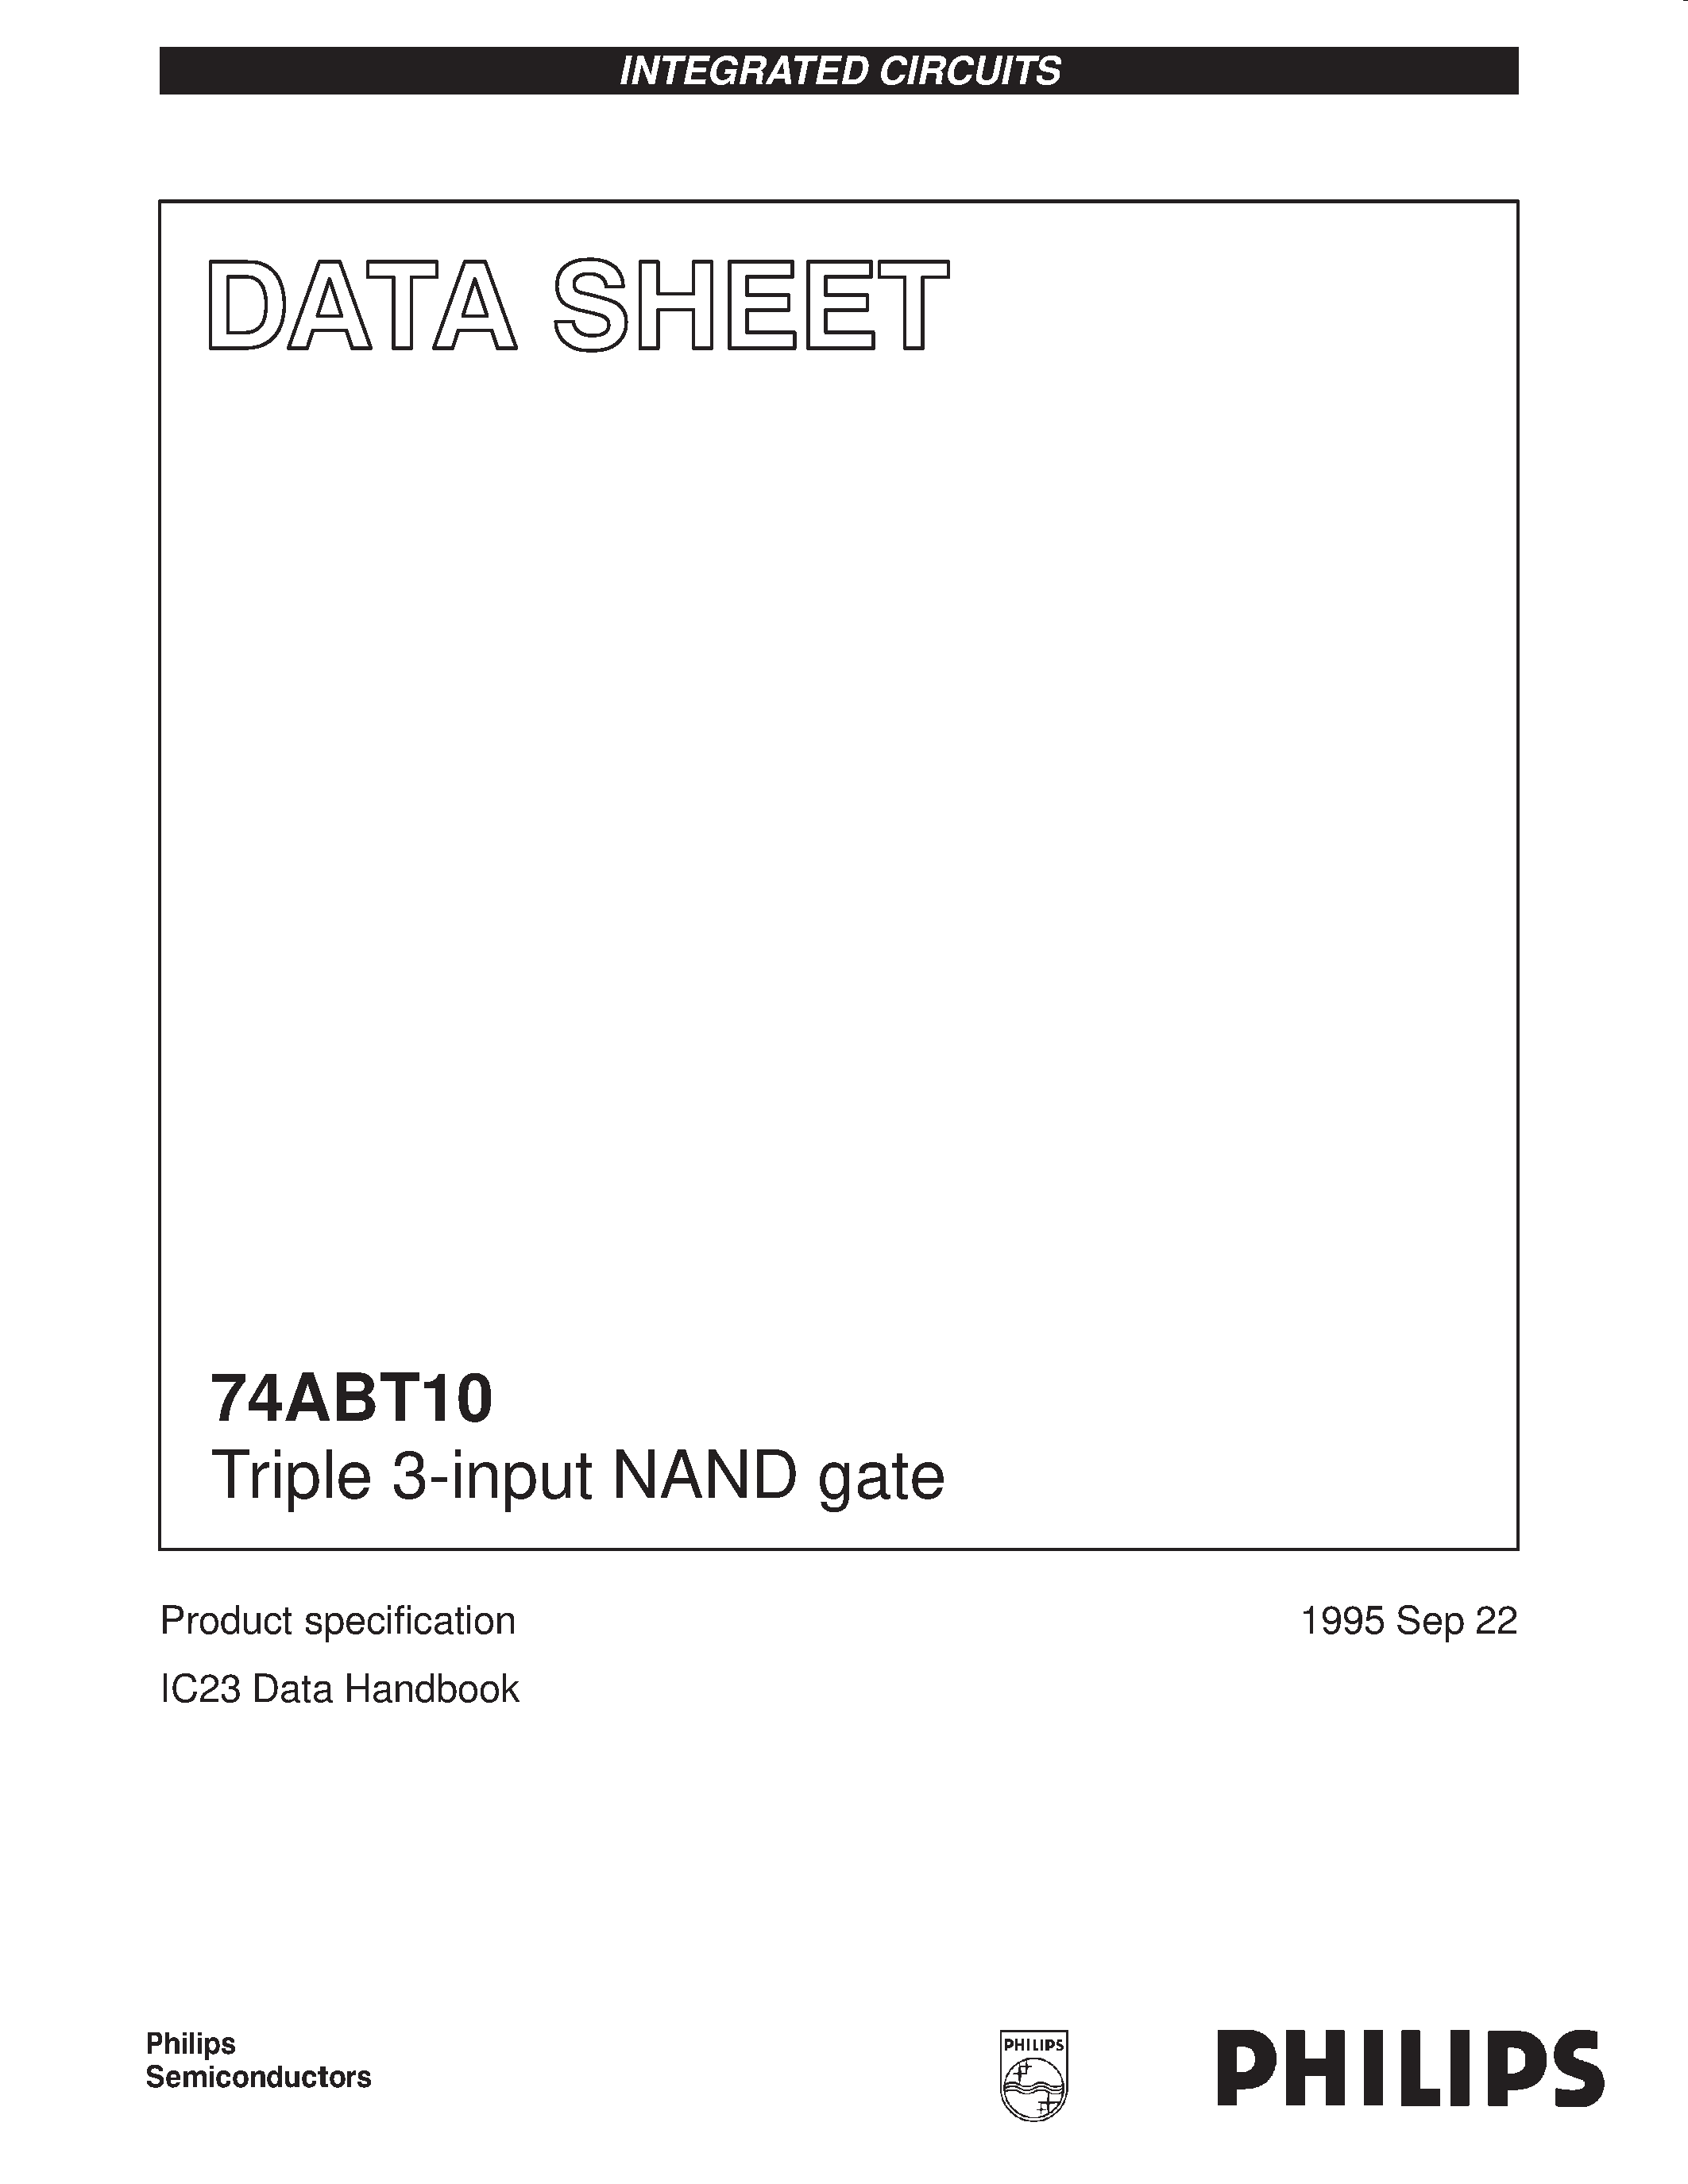 Даташит 74ABT10D - Triple 3-input NAND gate страница 1